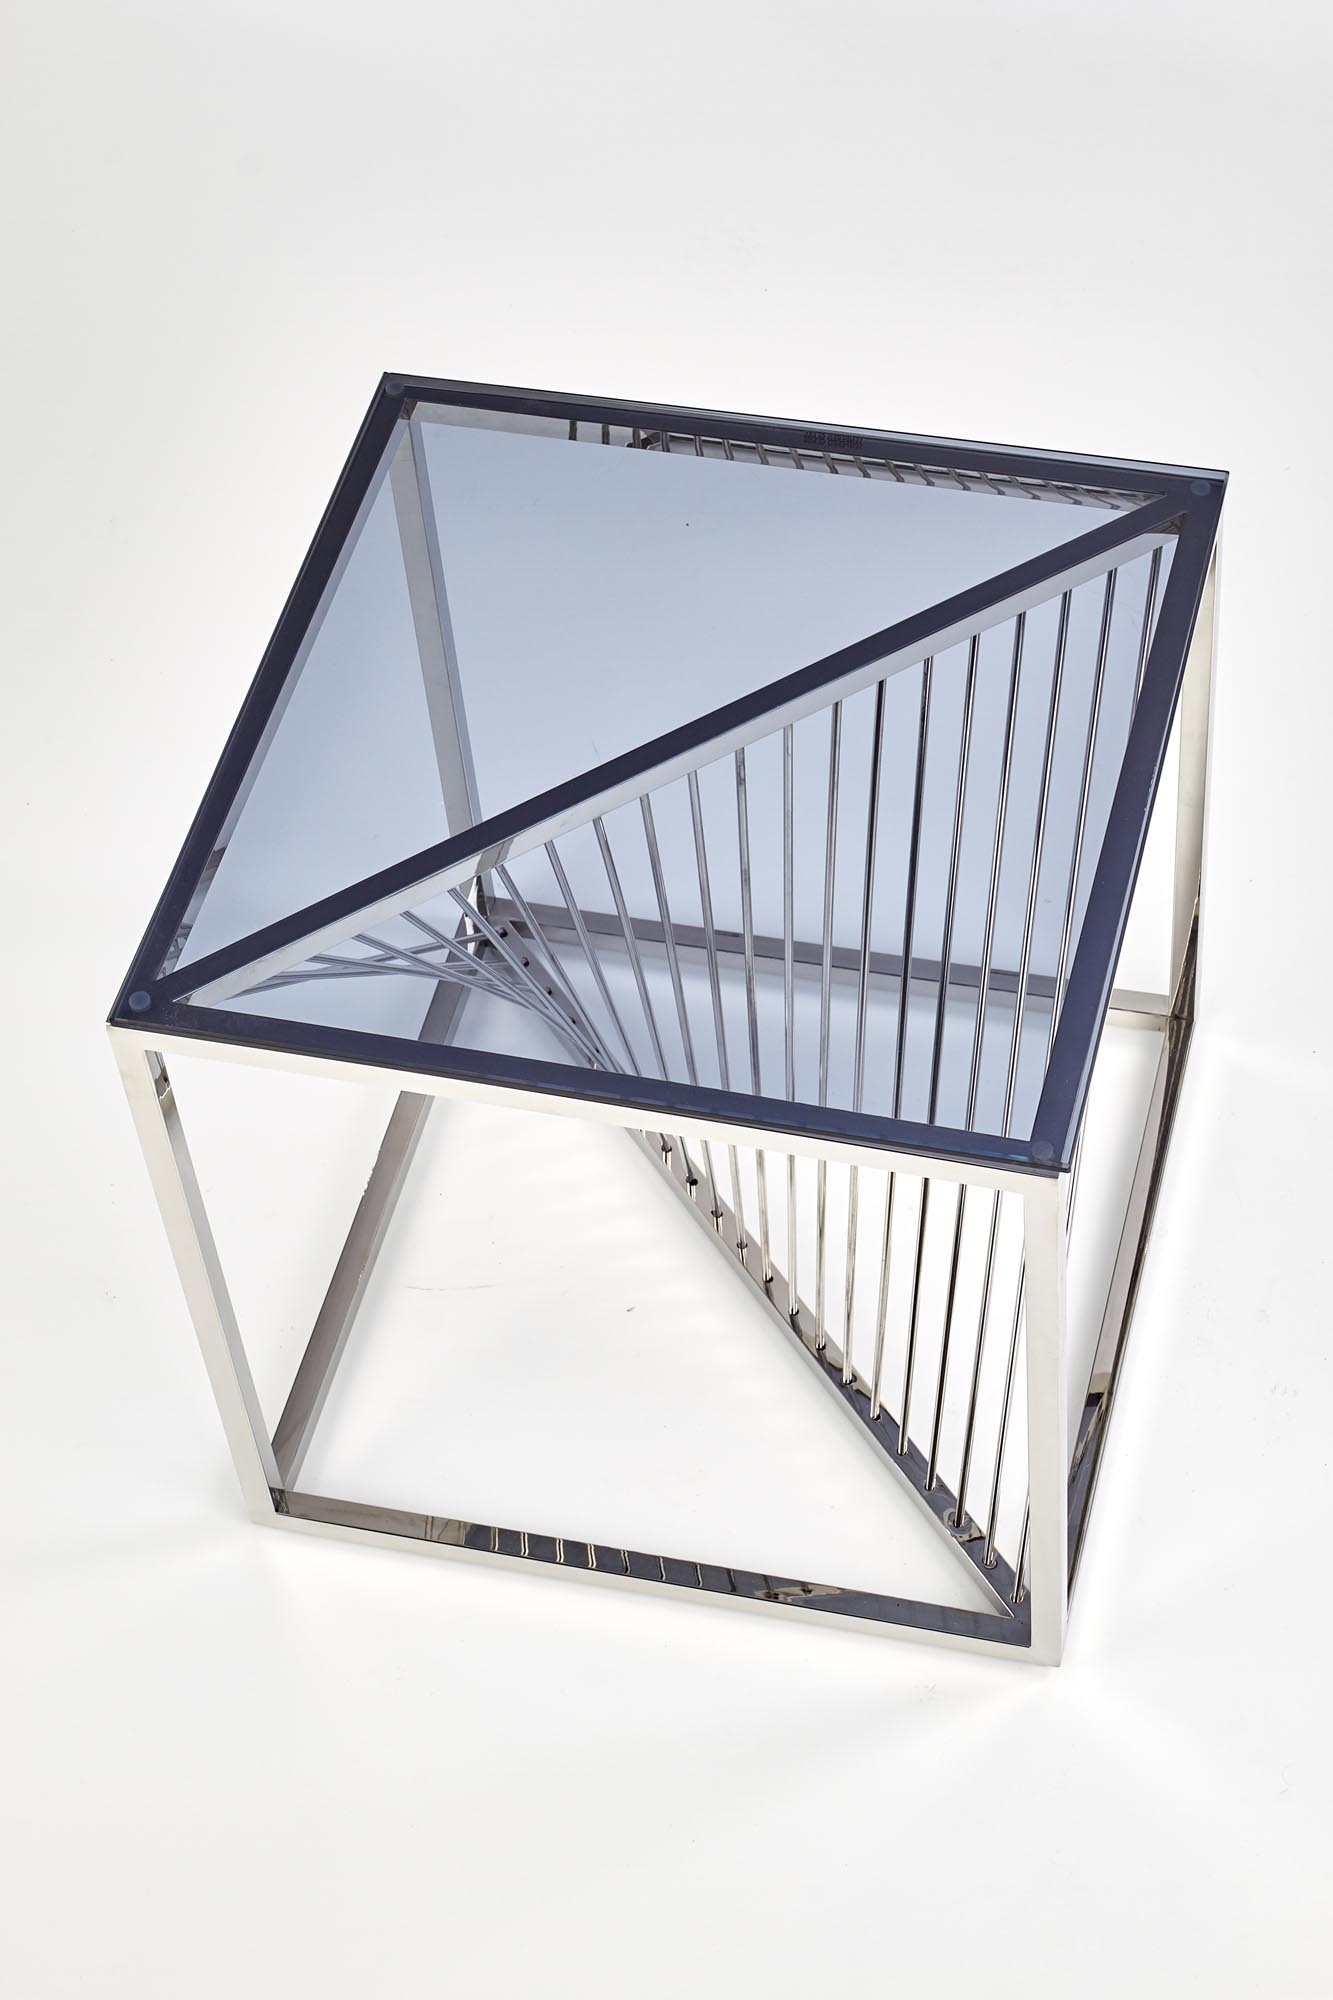 Bridge kwadrat dohányzóasztal,króm-üveg, 55x55x55cm"k"